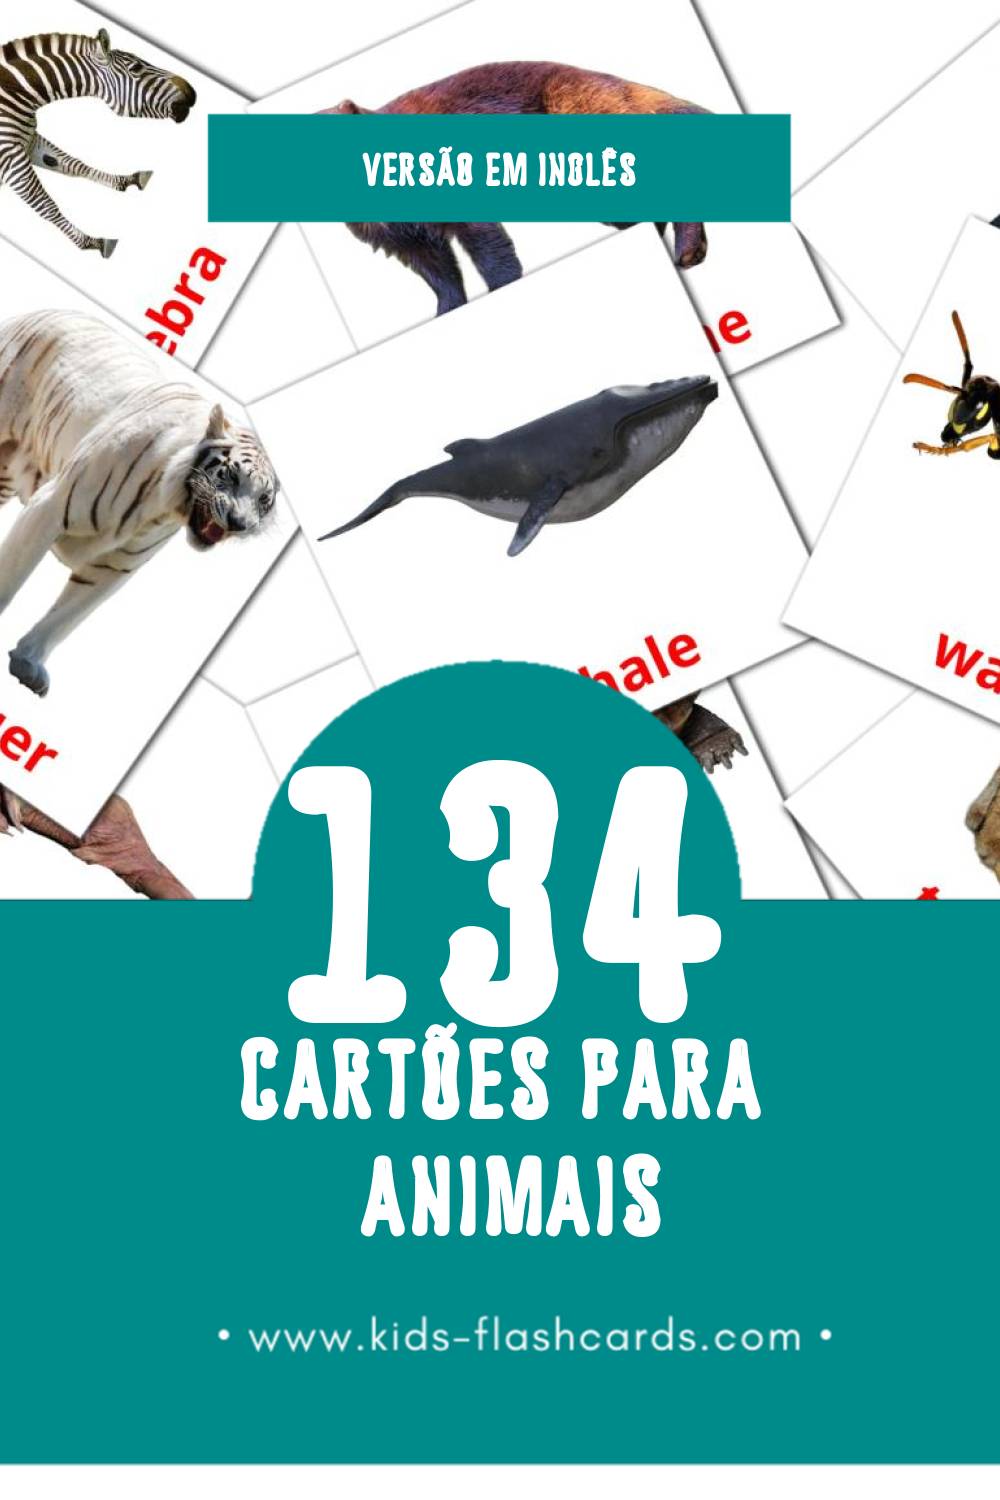 Flashcards de Animals Visuais para Toddlers (134 cartões em Inglês)